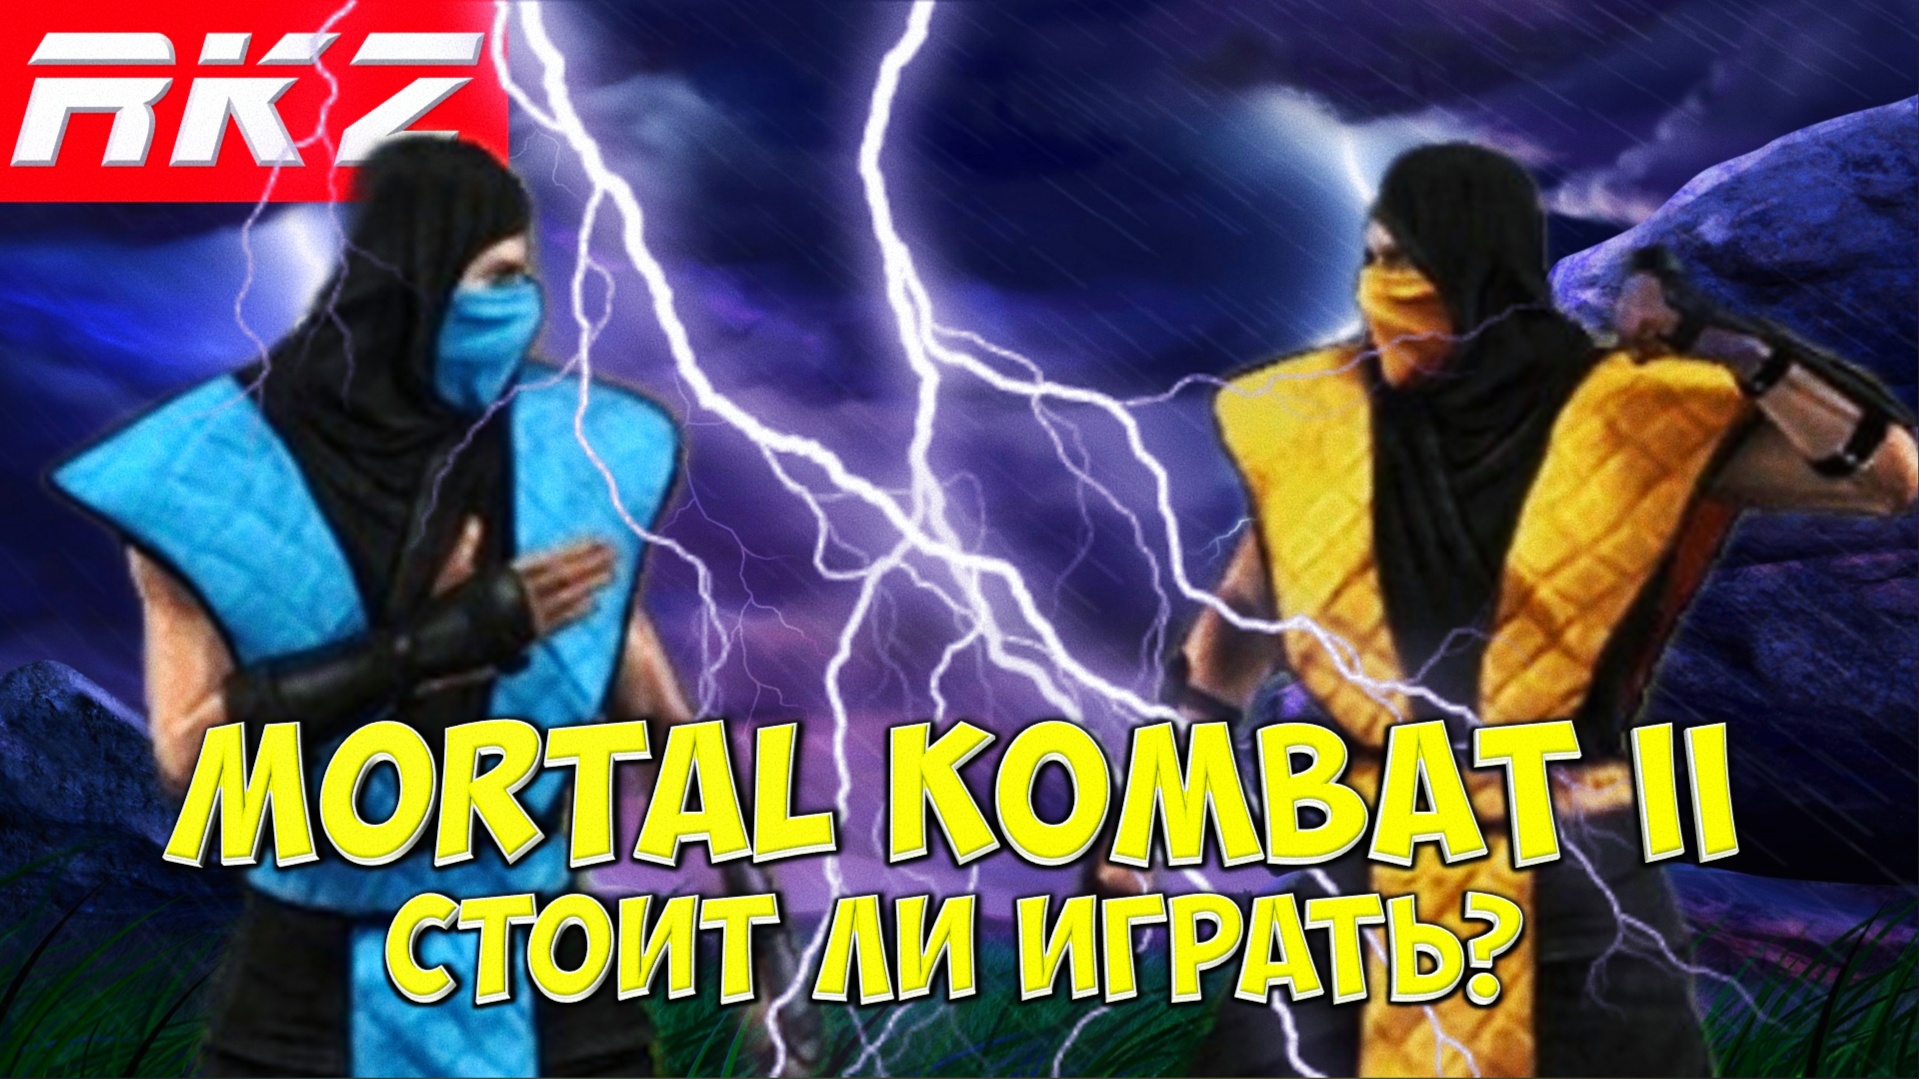 Стоит ли играть в Mortal Kombat II?